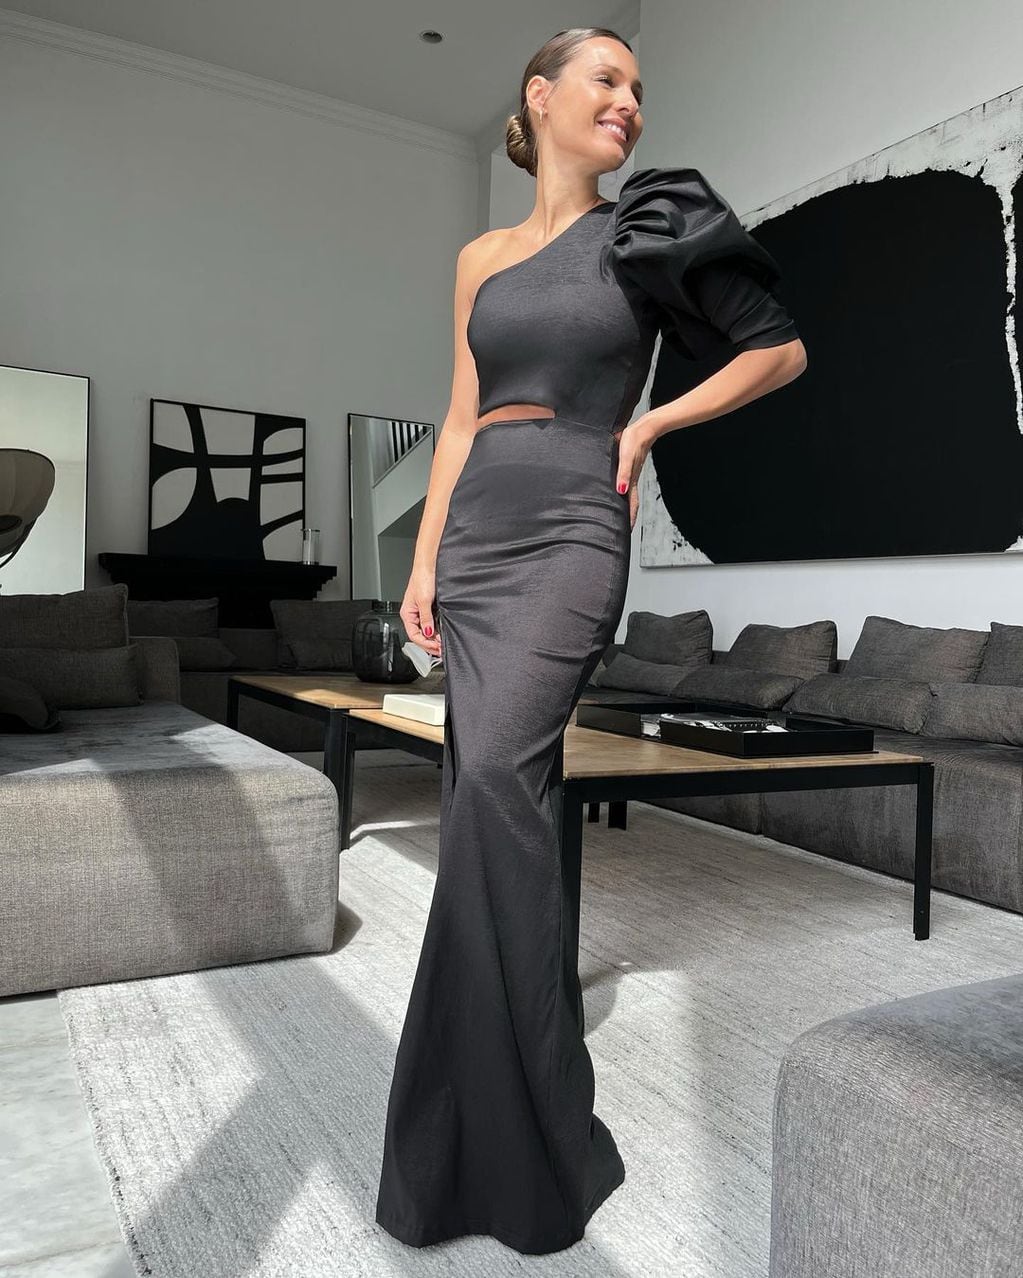 Pampita y un look despampanate: vestido negro con hombreras, corte en la cintura y espalda abierta.